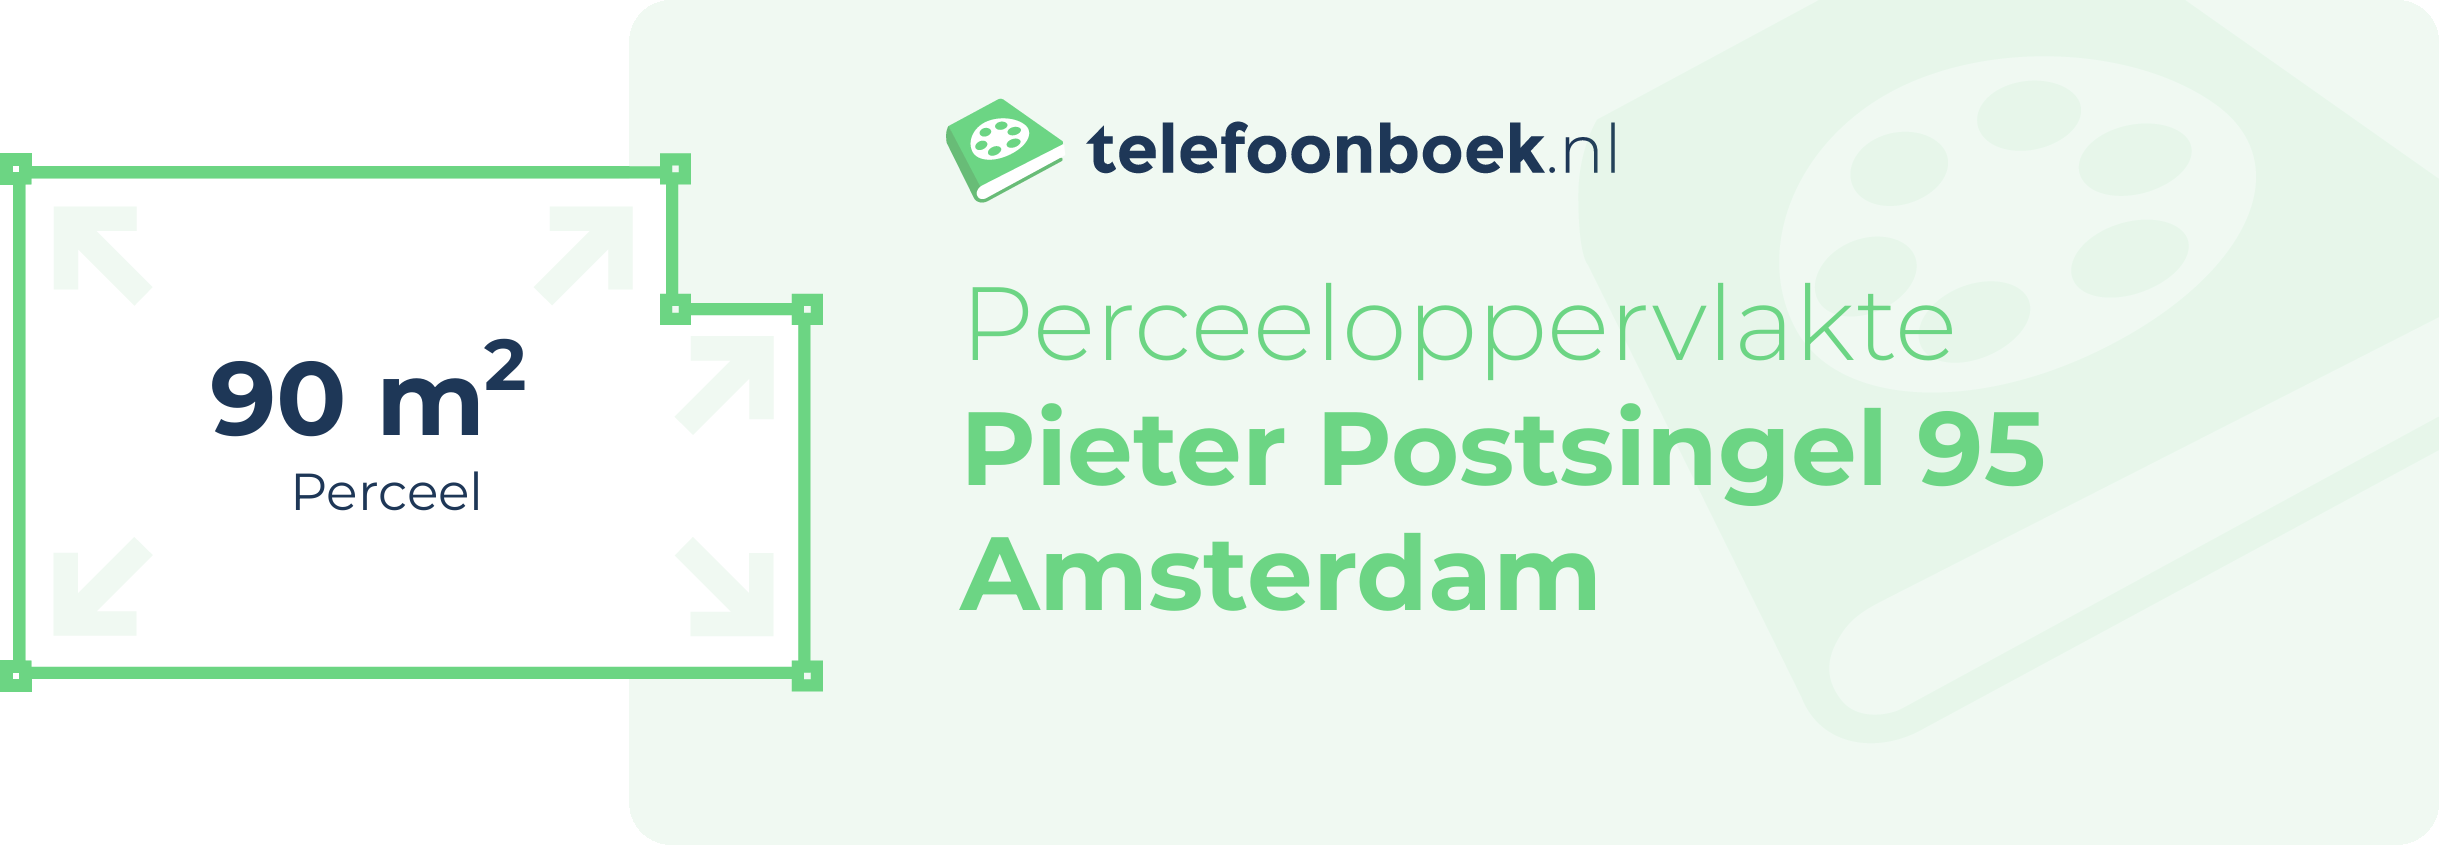 Perceeloppervlakte Pieter Postsingel 95 Amsterdam